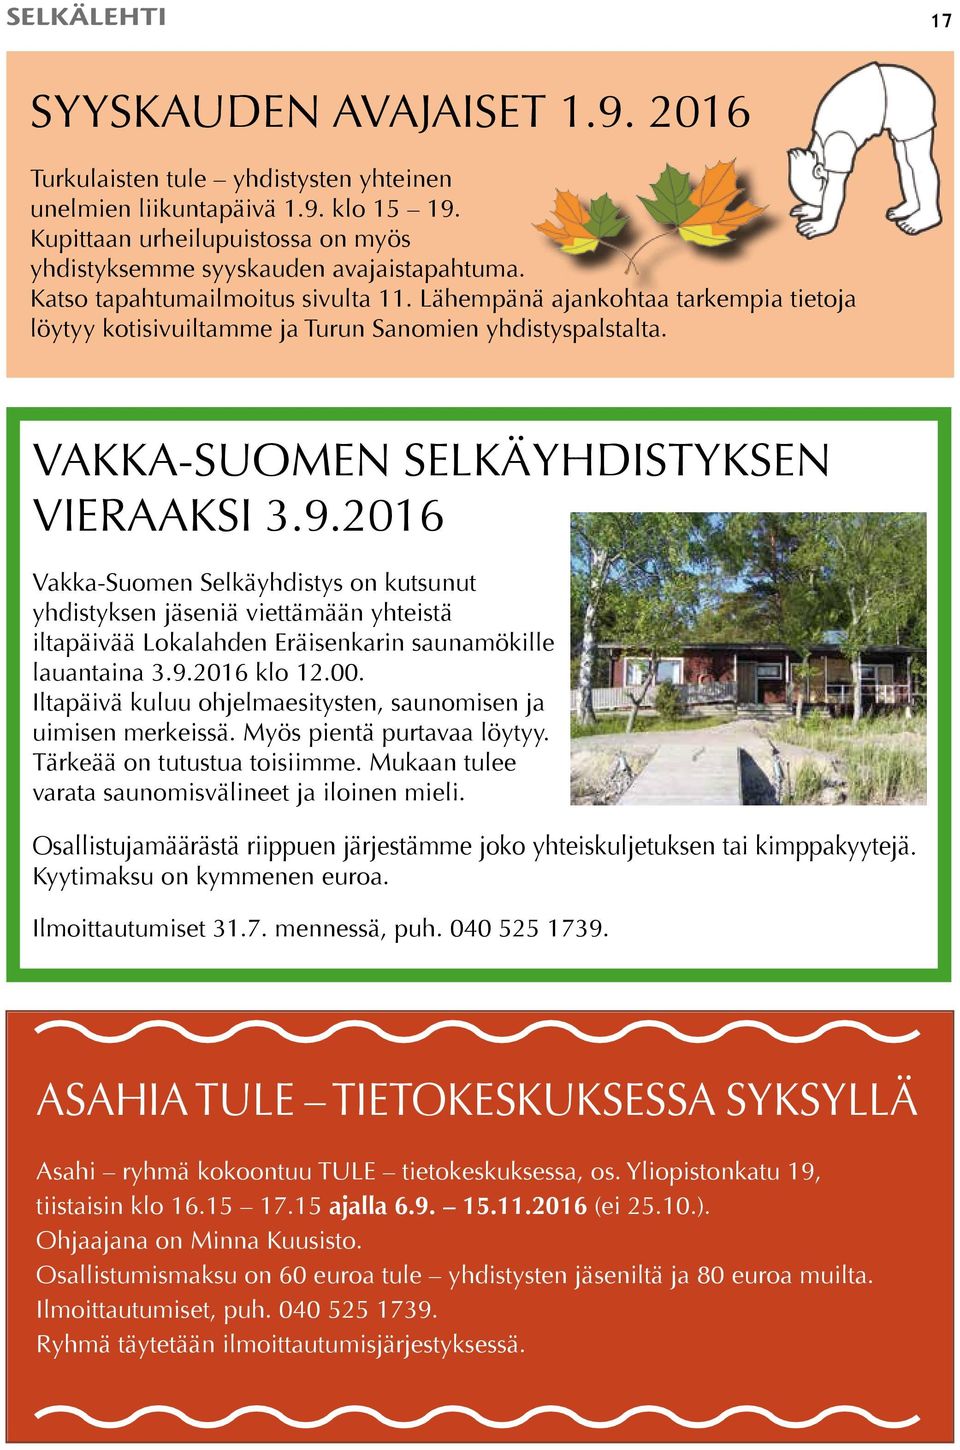 2016 Vakka-Suomen Selkäyhdistys on kutsunut yhdistyksen jäseniä viettämään yhteistä iltapäivää Lokalahden Eräisenkarin saunamökille lauantaina 3.9.2016 klo 12.00.